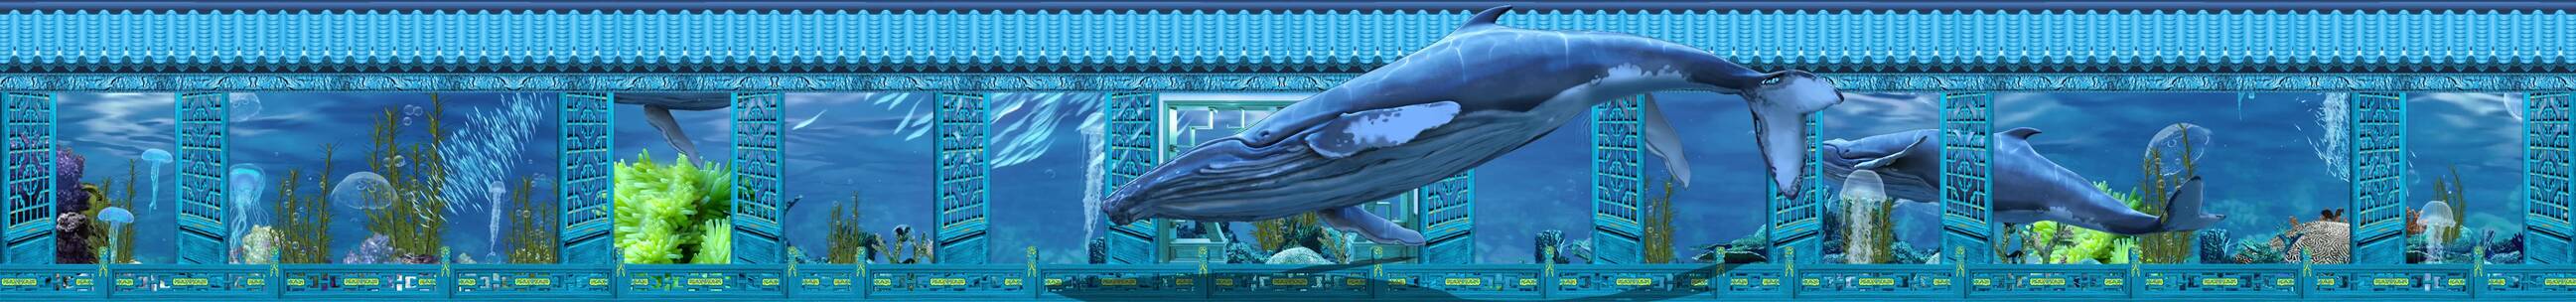 蓝色屏风海洋 鲨鱼鲸鱼 裸眼3d